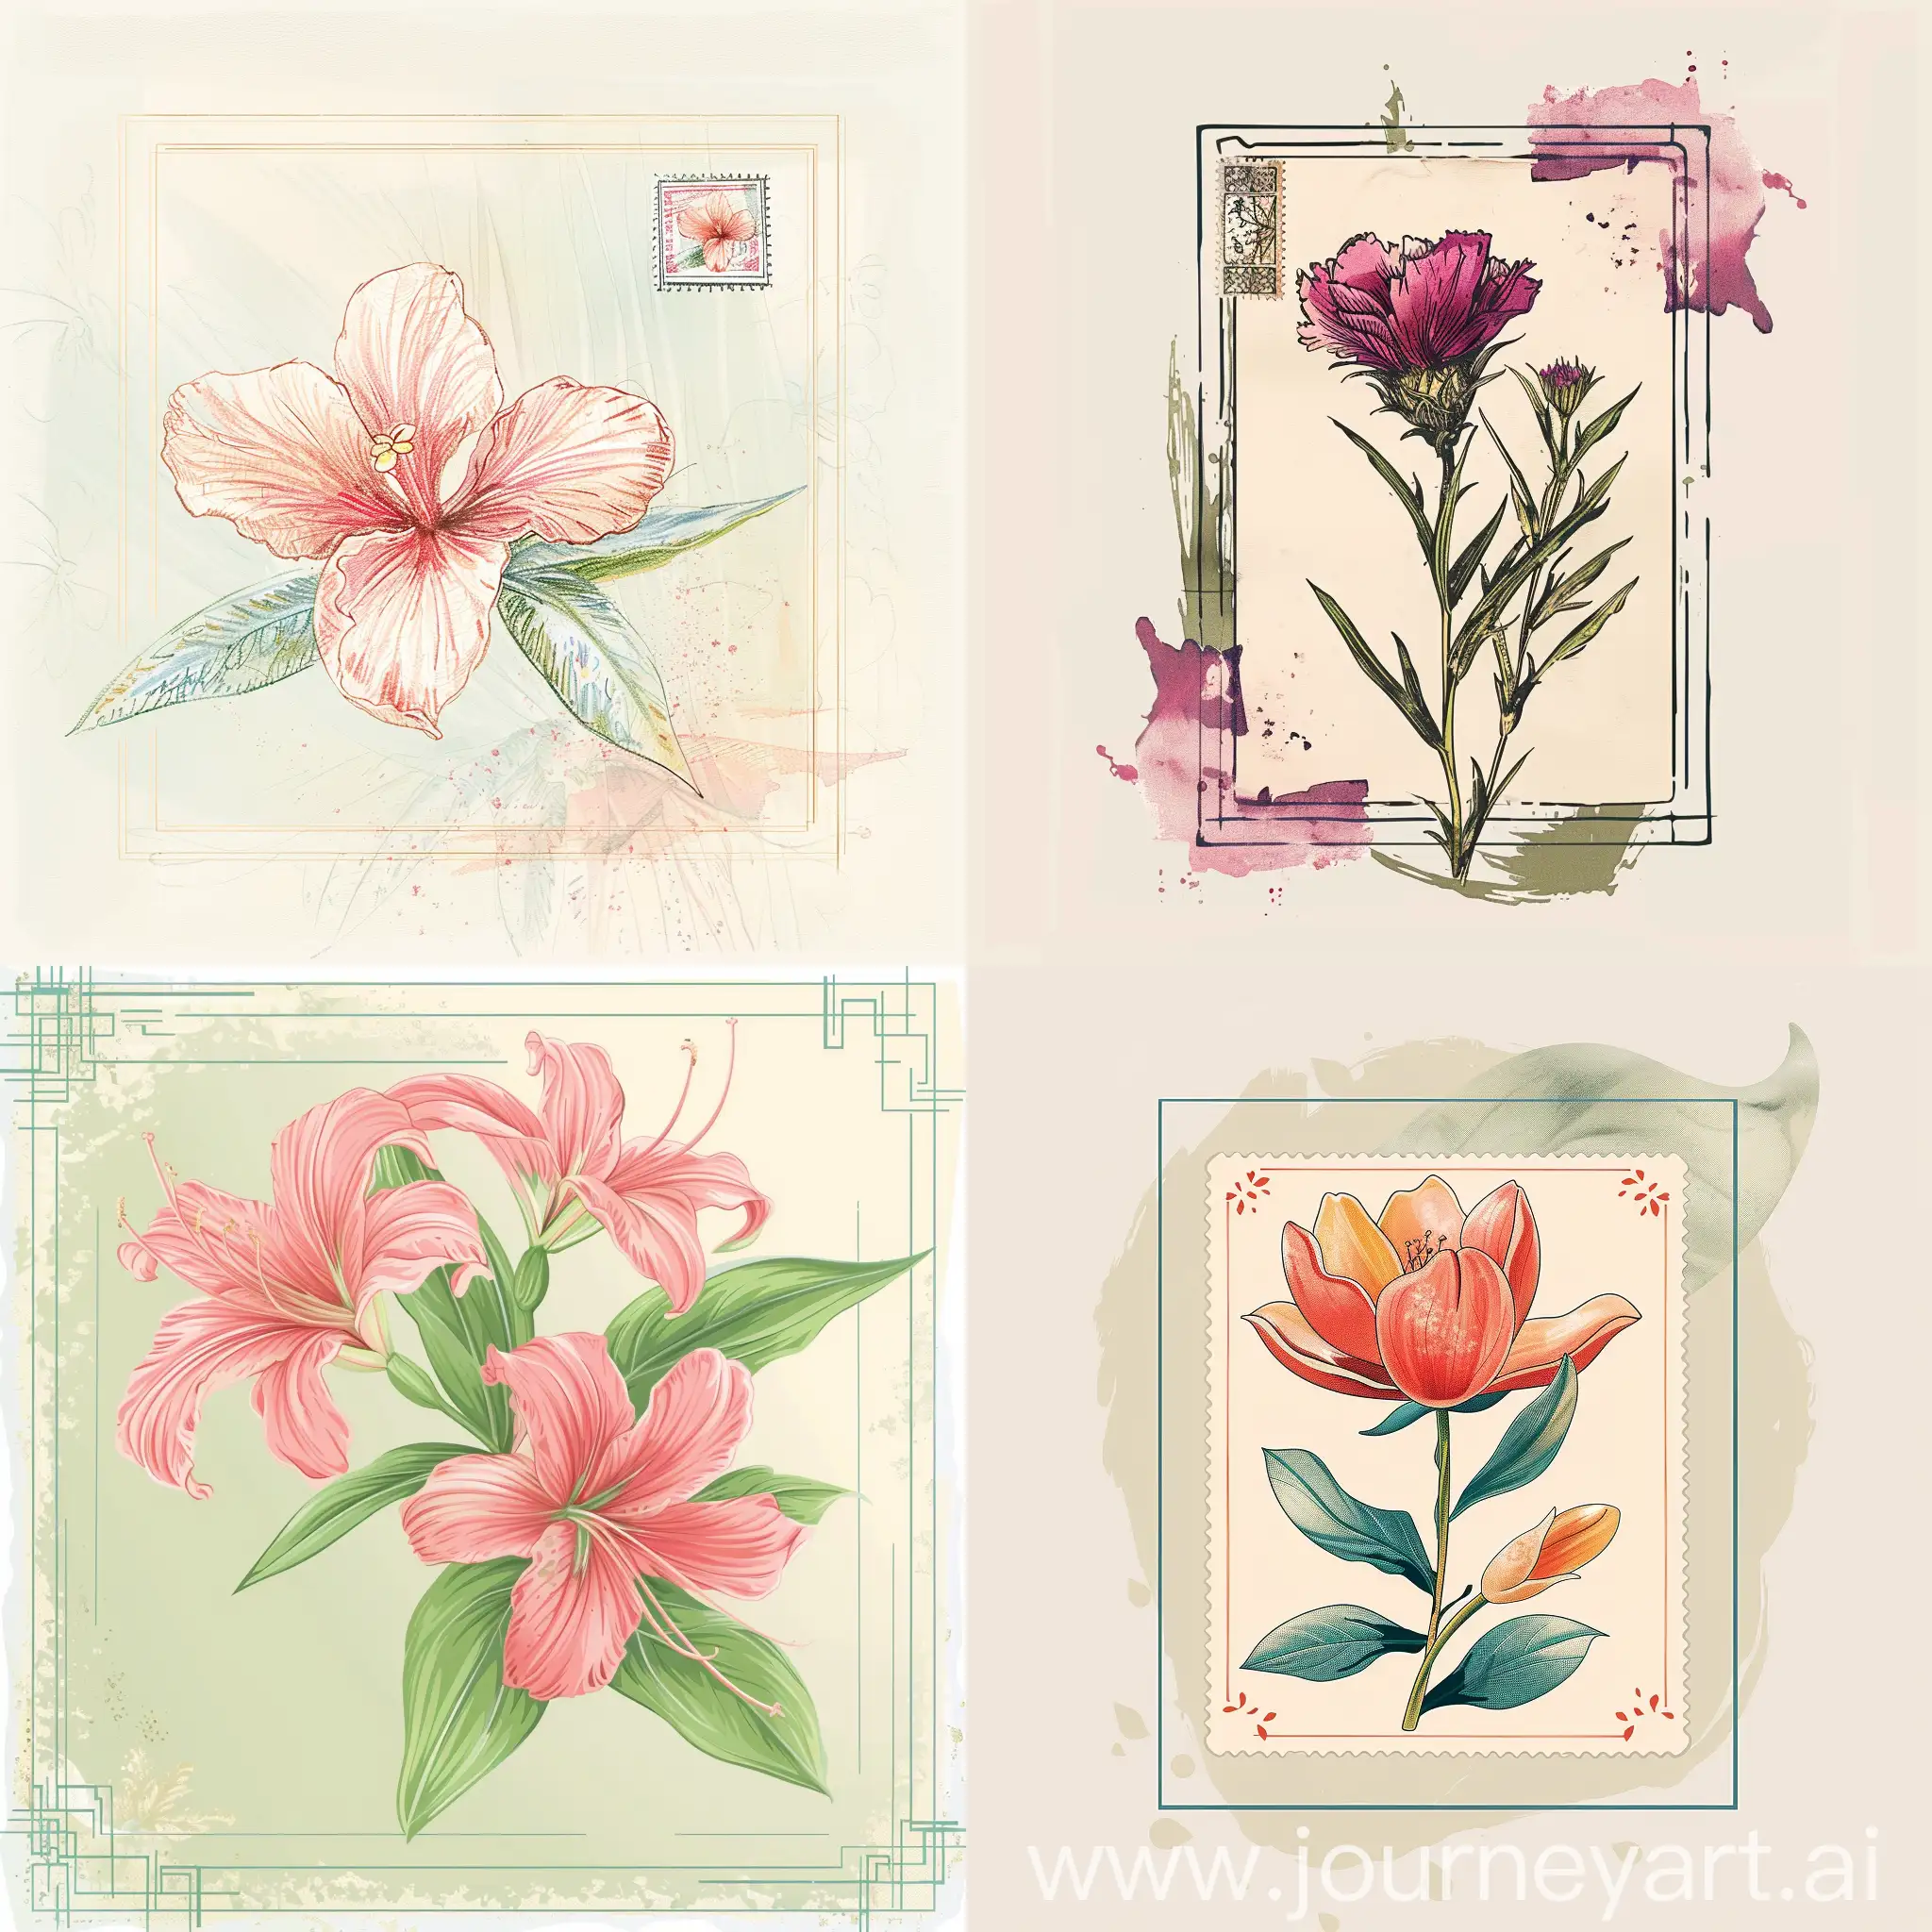 Illustration-of-Vibrant-Israeli-Flowers-in-Stamp-Frame